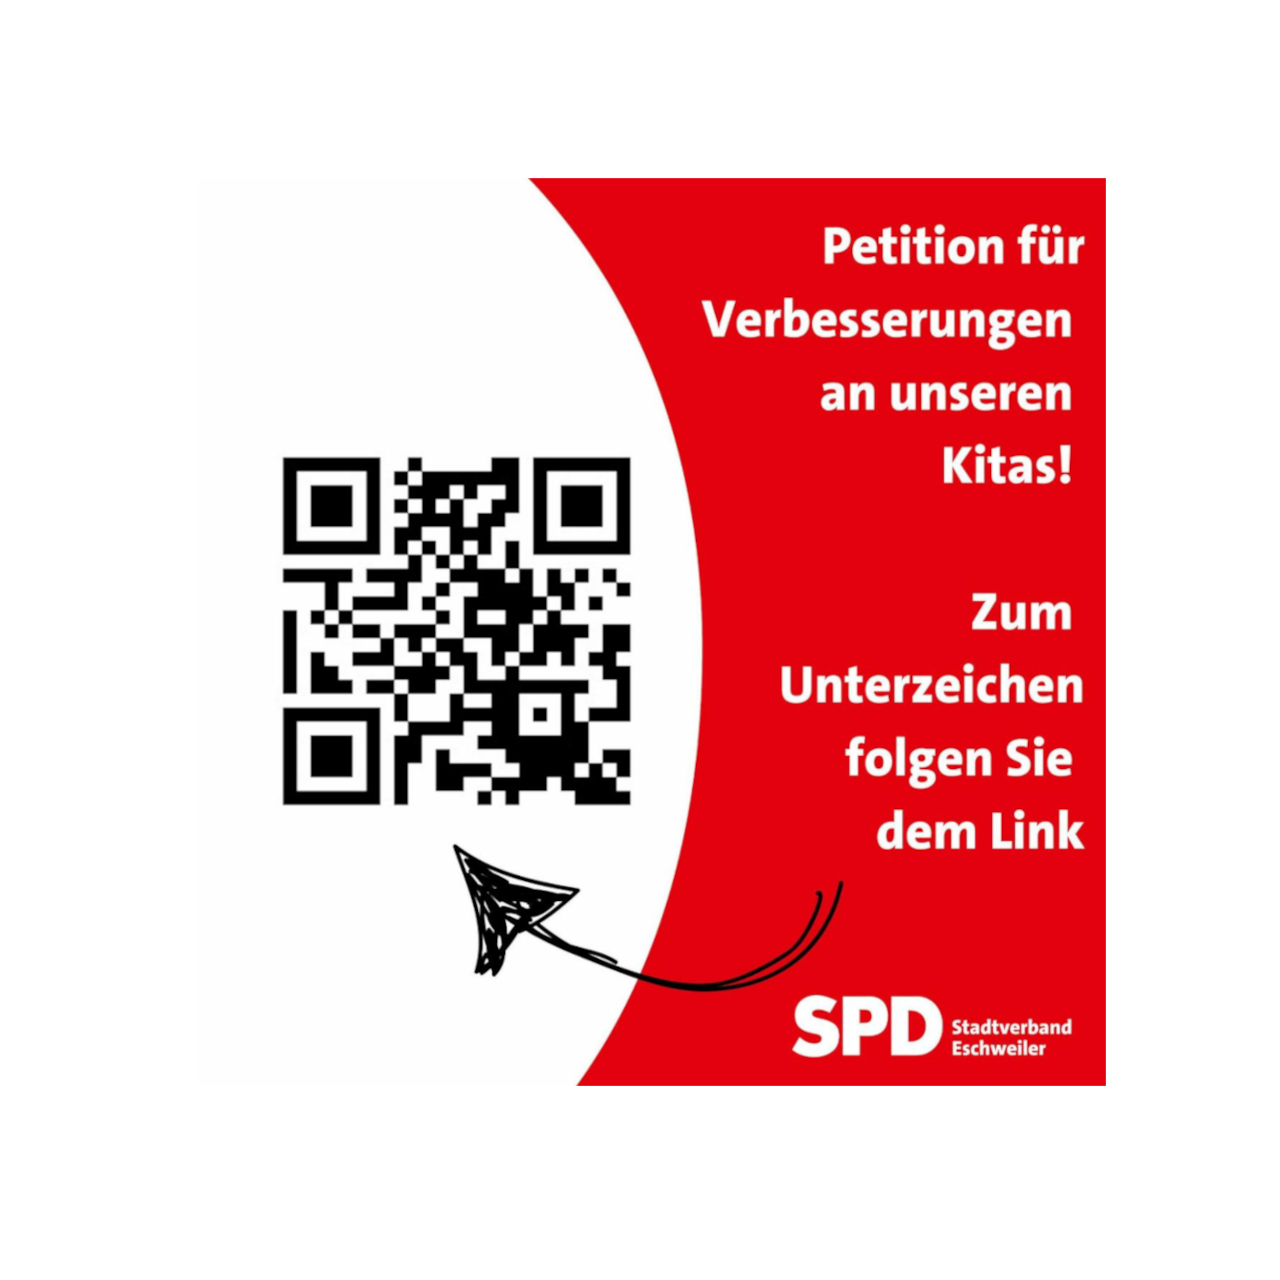 SPD_Eschweiler_Petition_Kitas